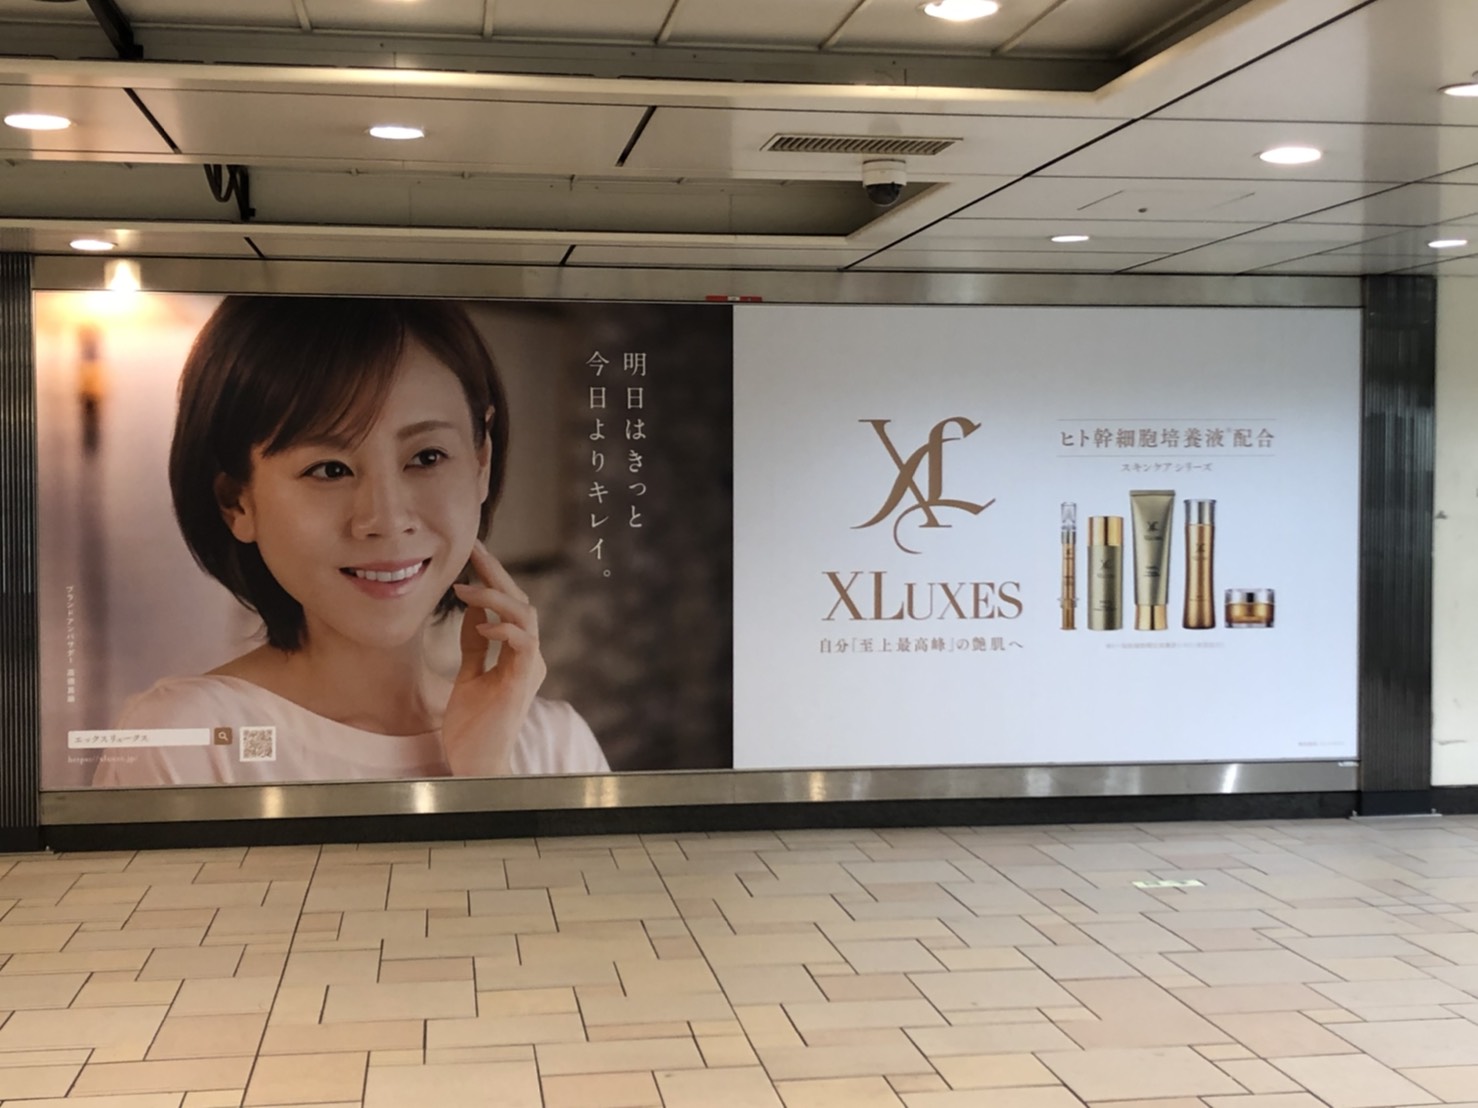 エックスワン化粧品のブランドアンバサダー高橋 真麻さんの交通広告が ...